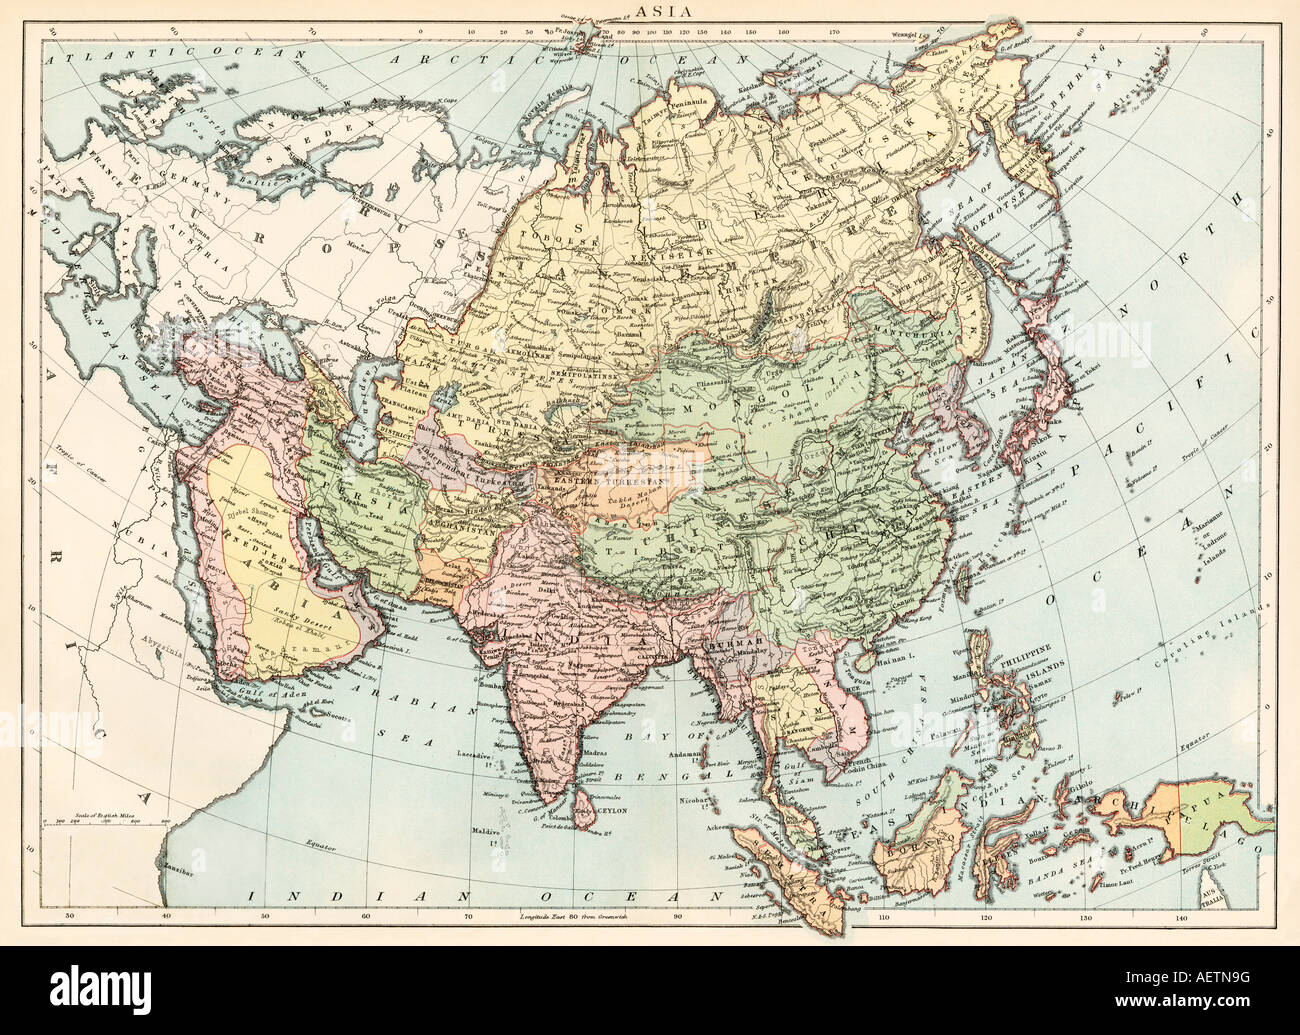 Karte von Asien um 1870. Farblithographie Stockfoto